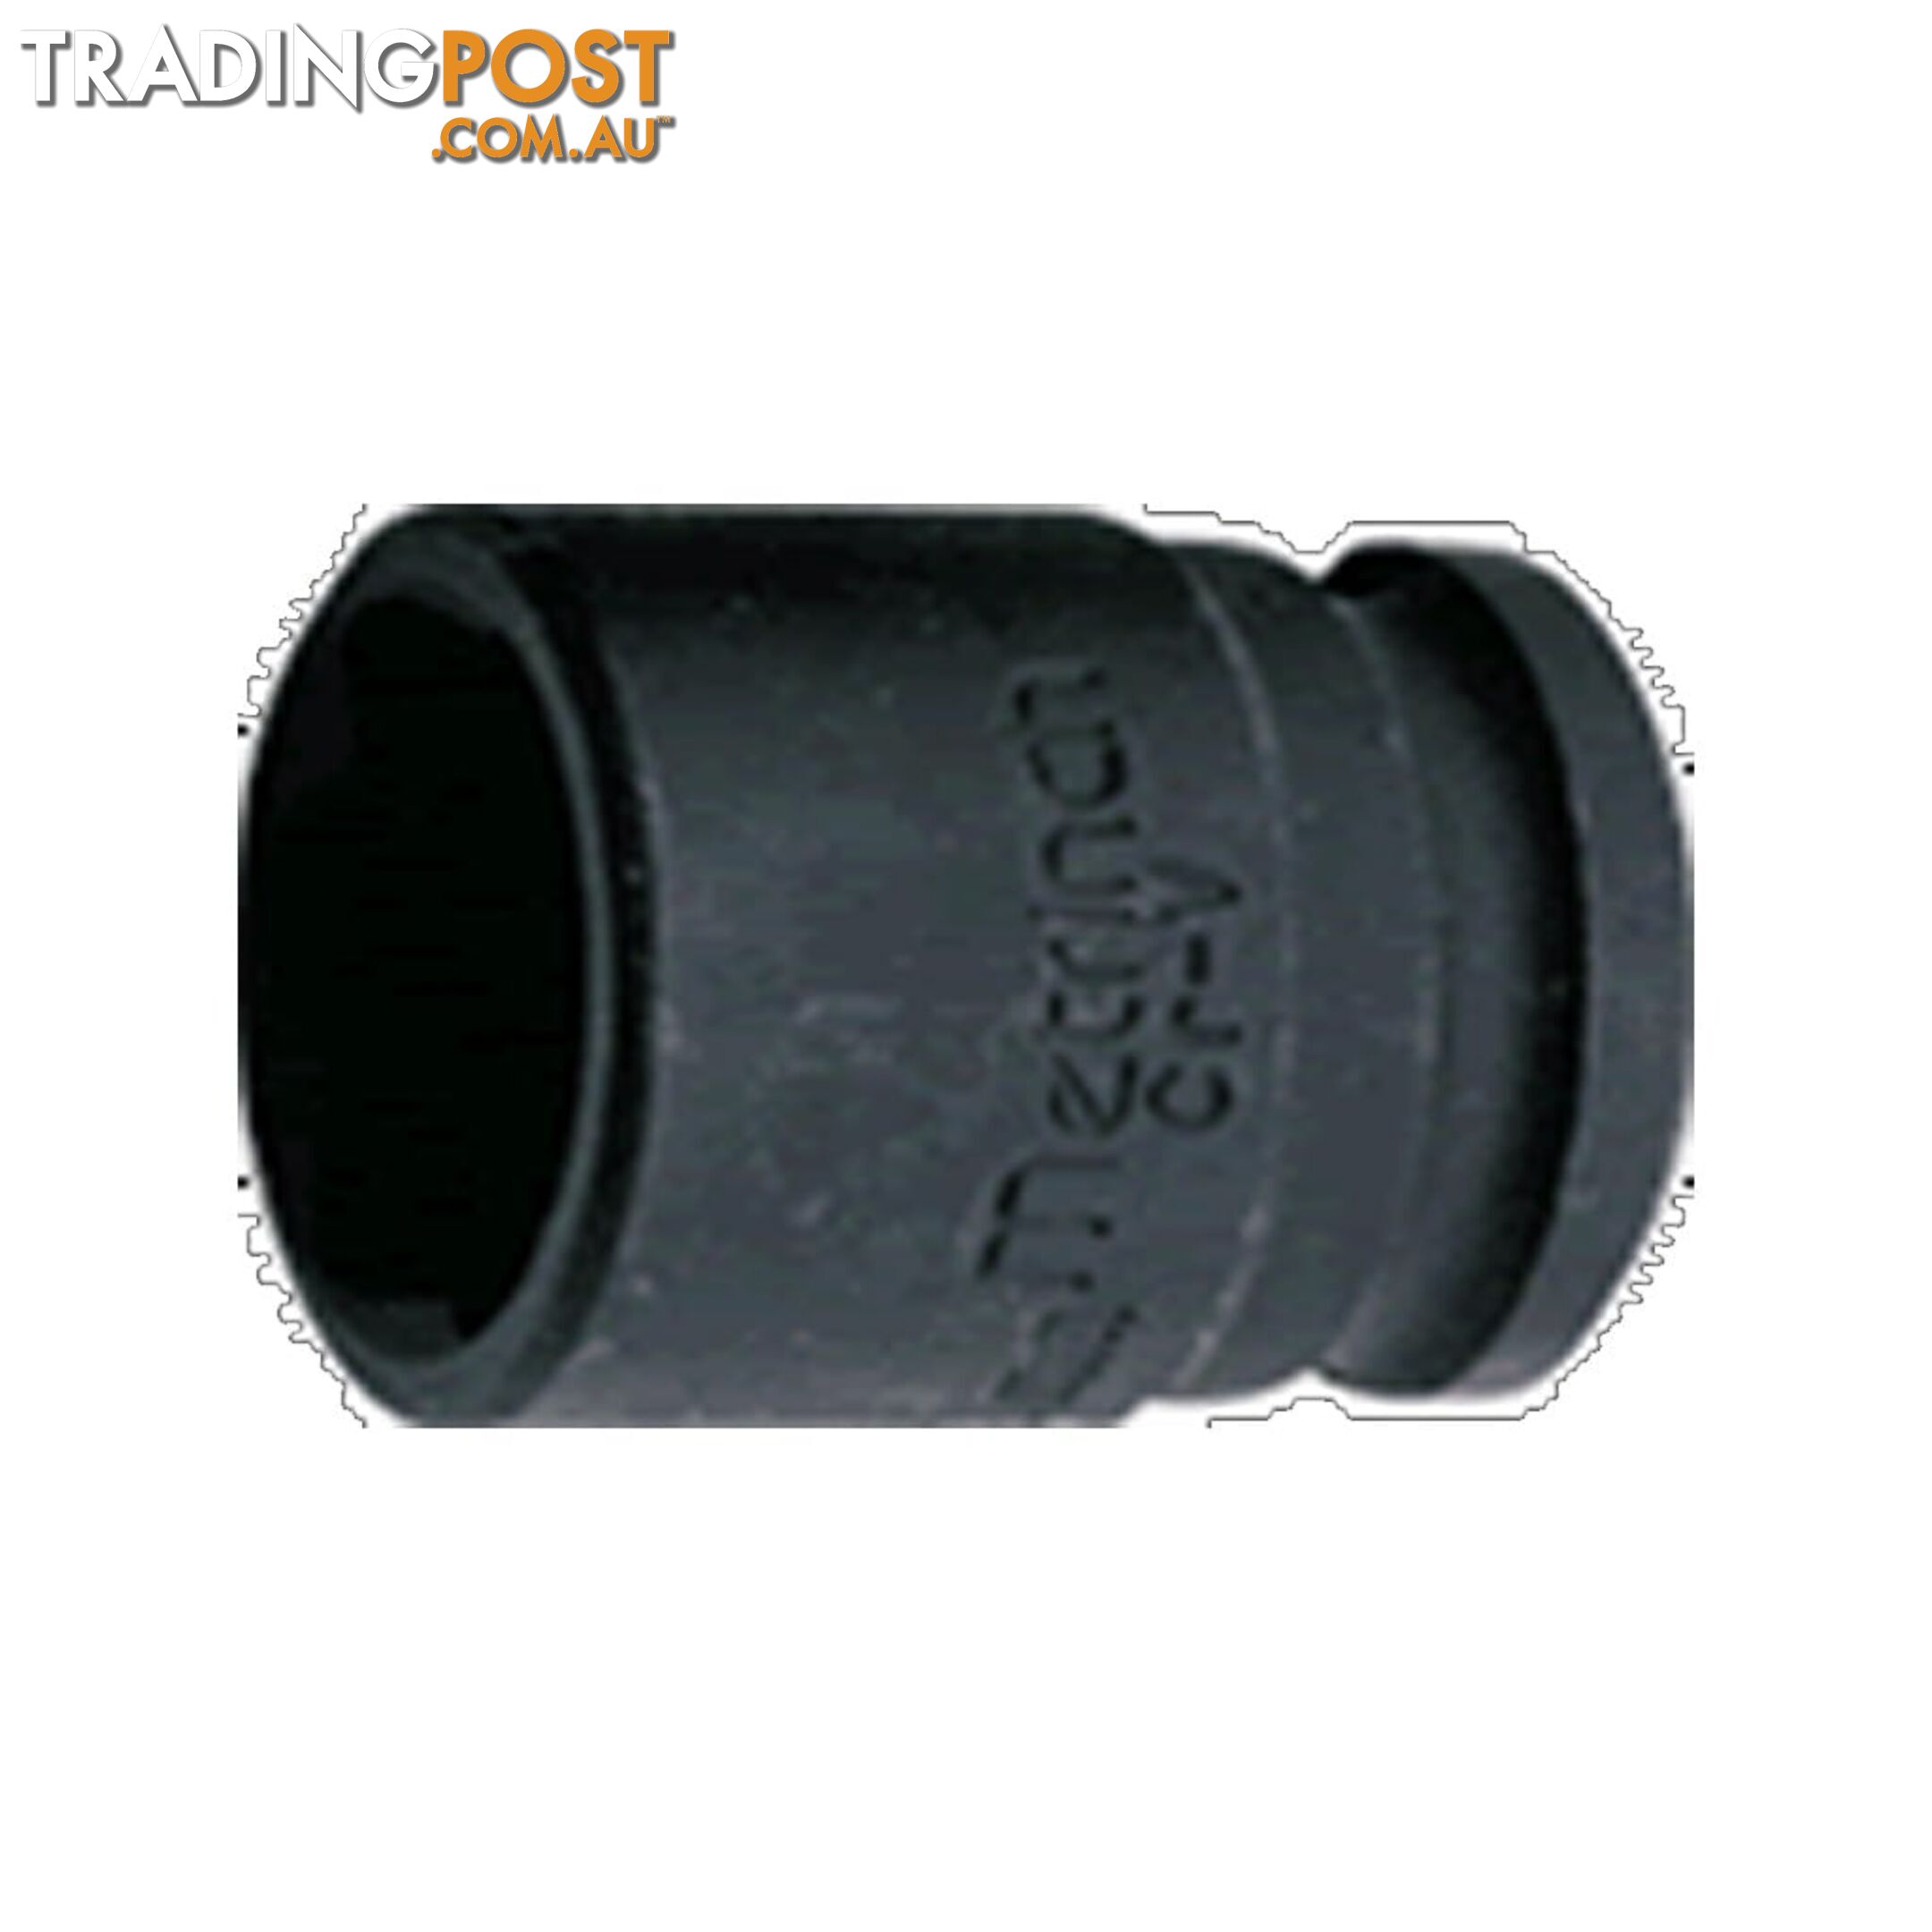 Metrinch Impact Socket Standard 17mm 11/16 " SKU - MET-2217